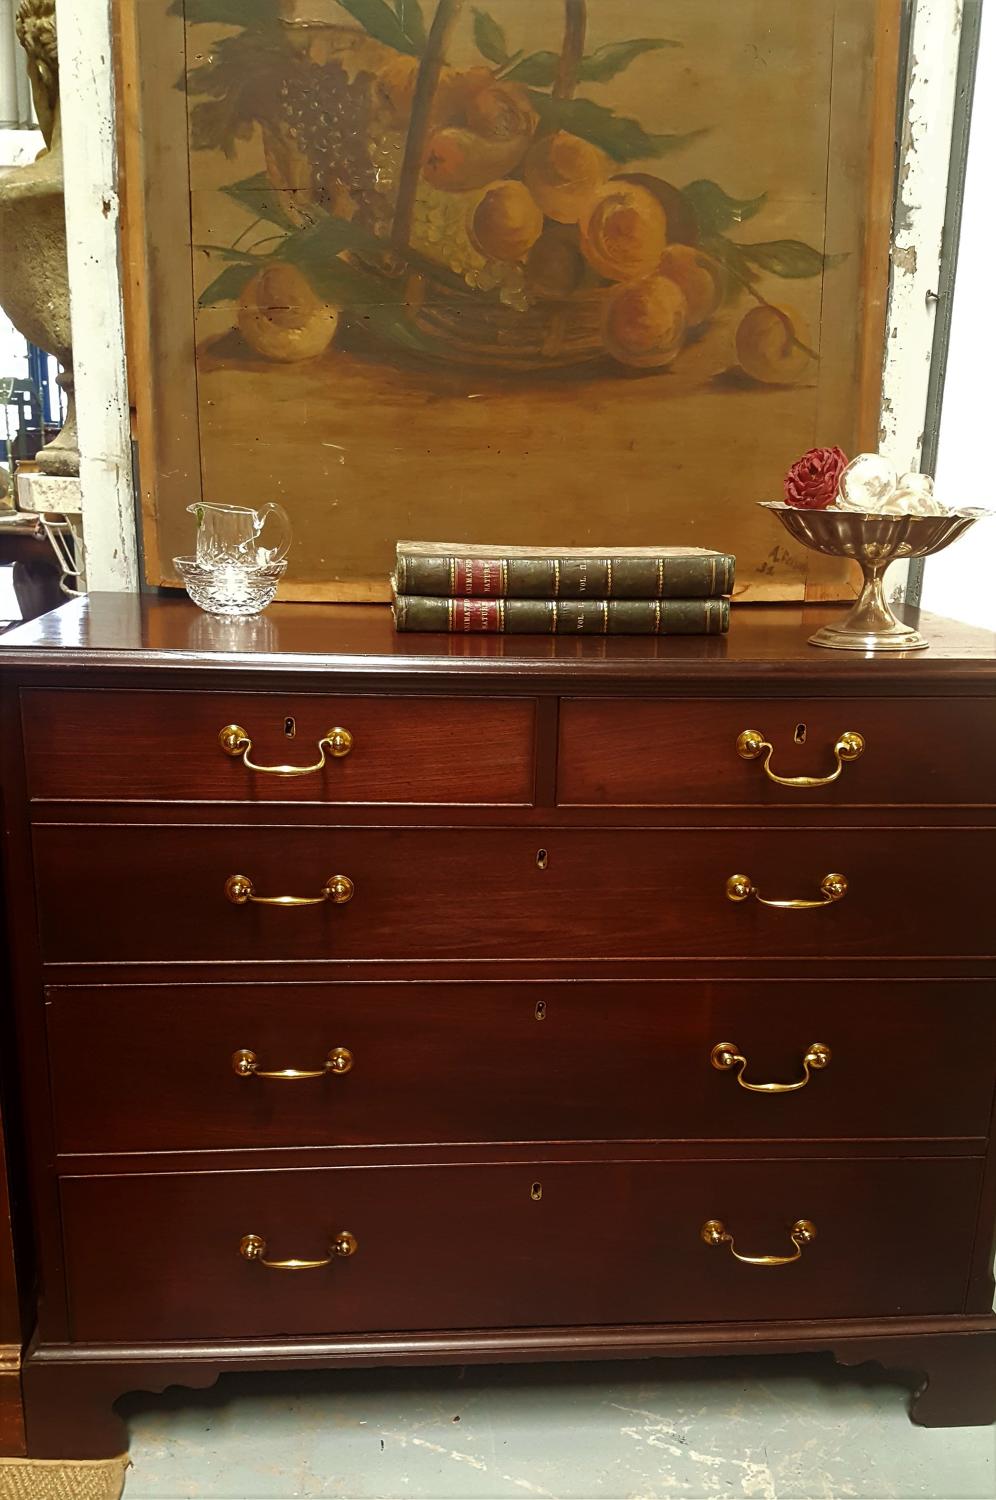 Georgian mahogany chest of drawers